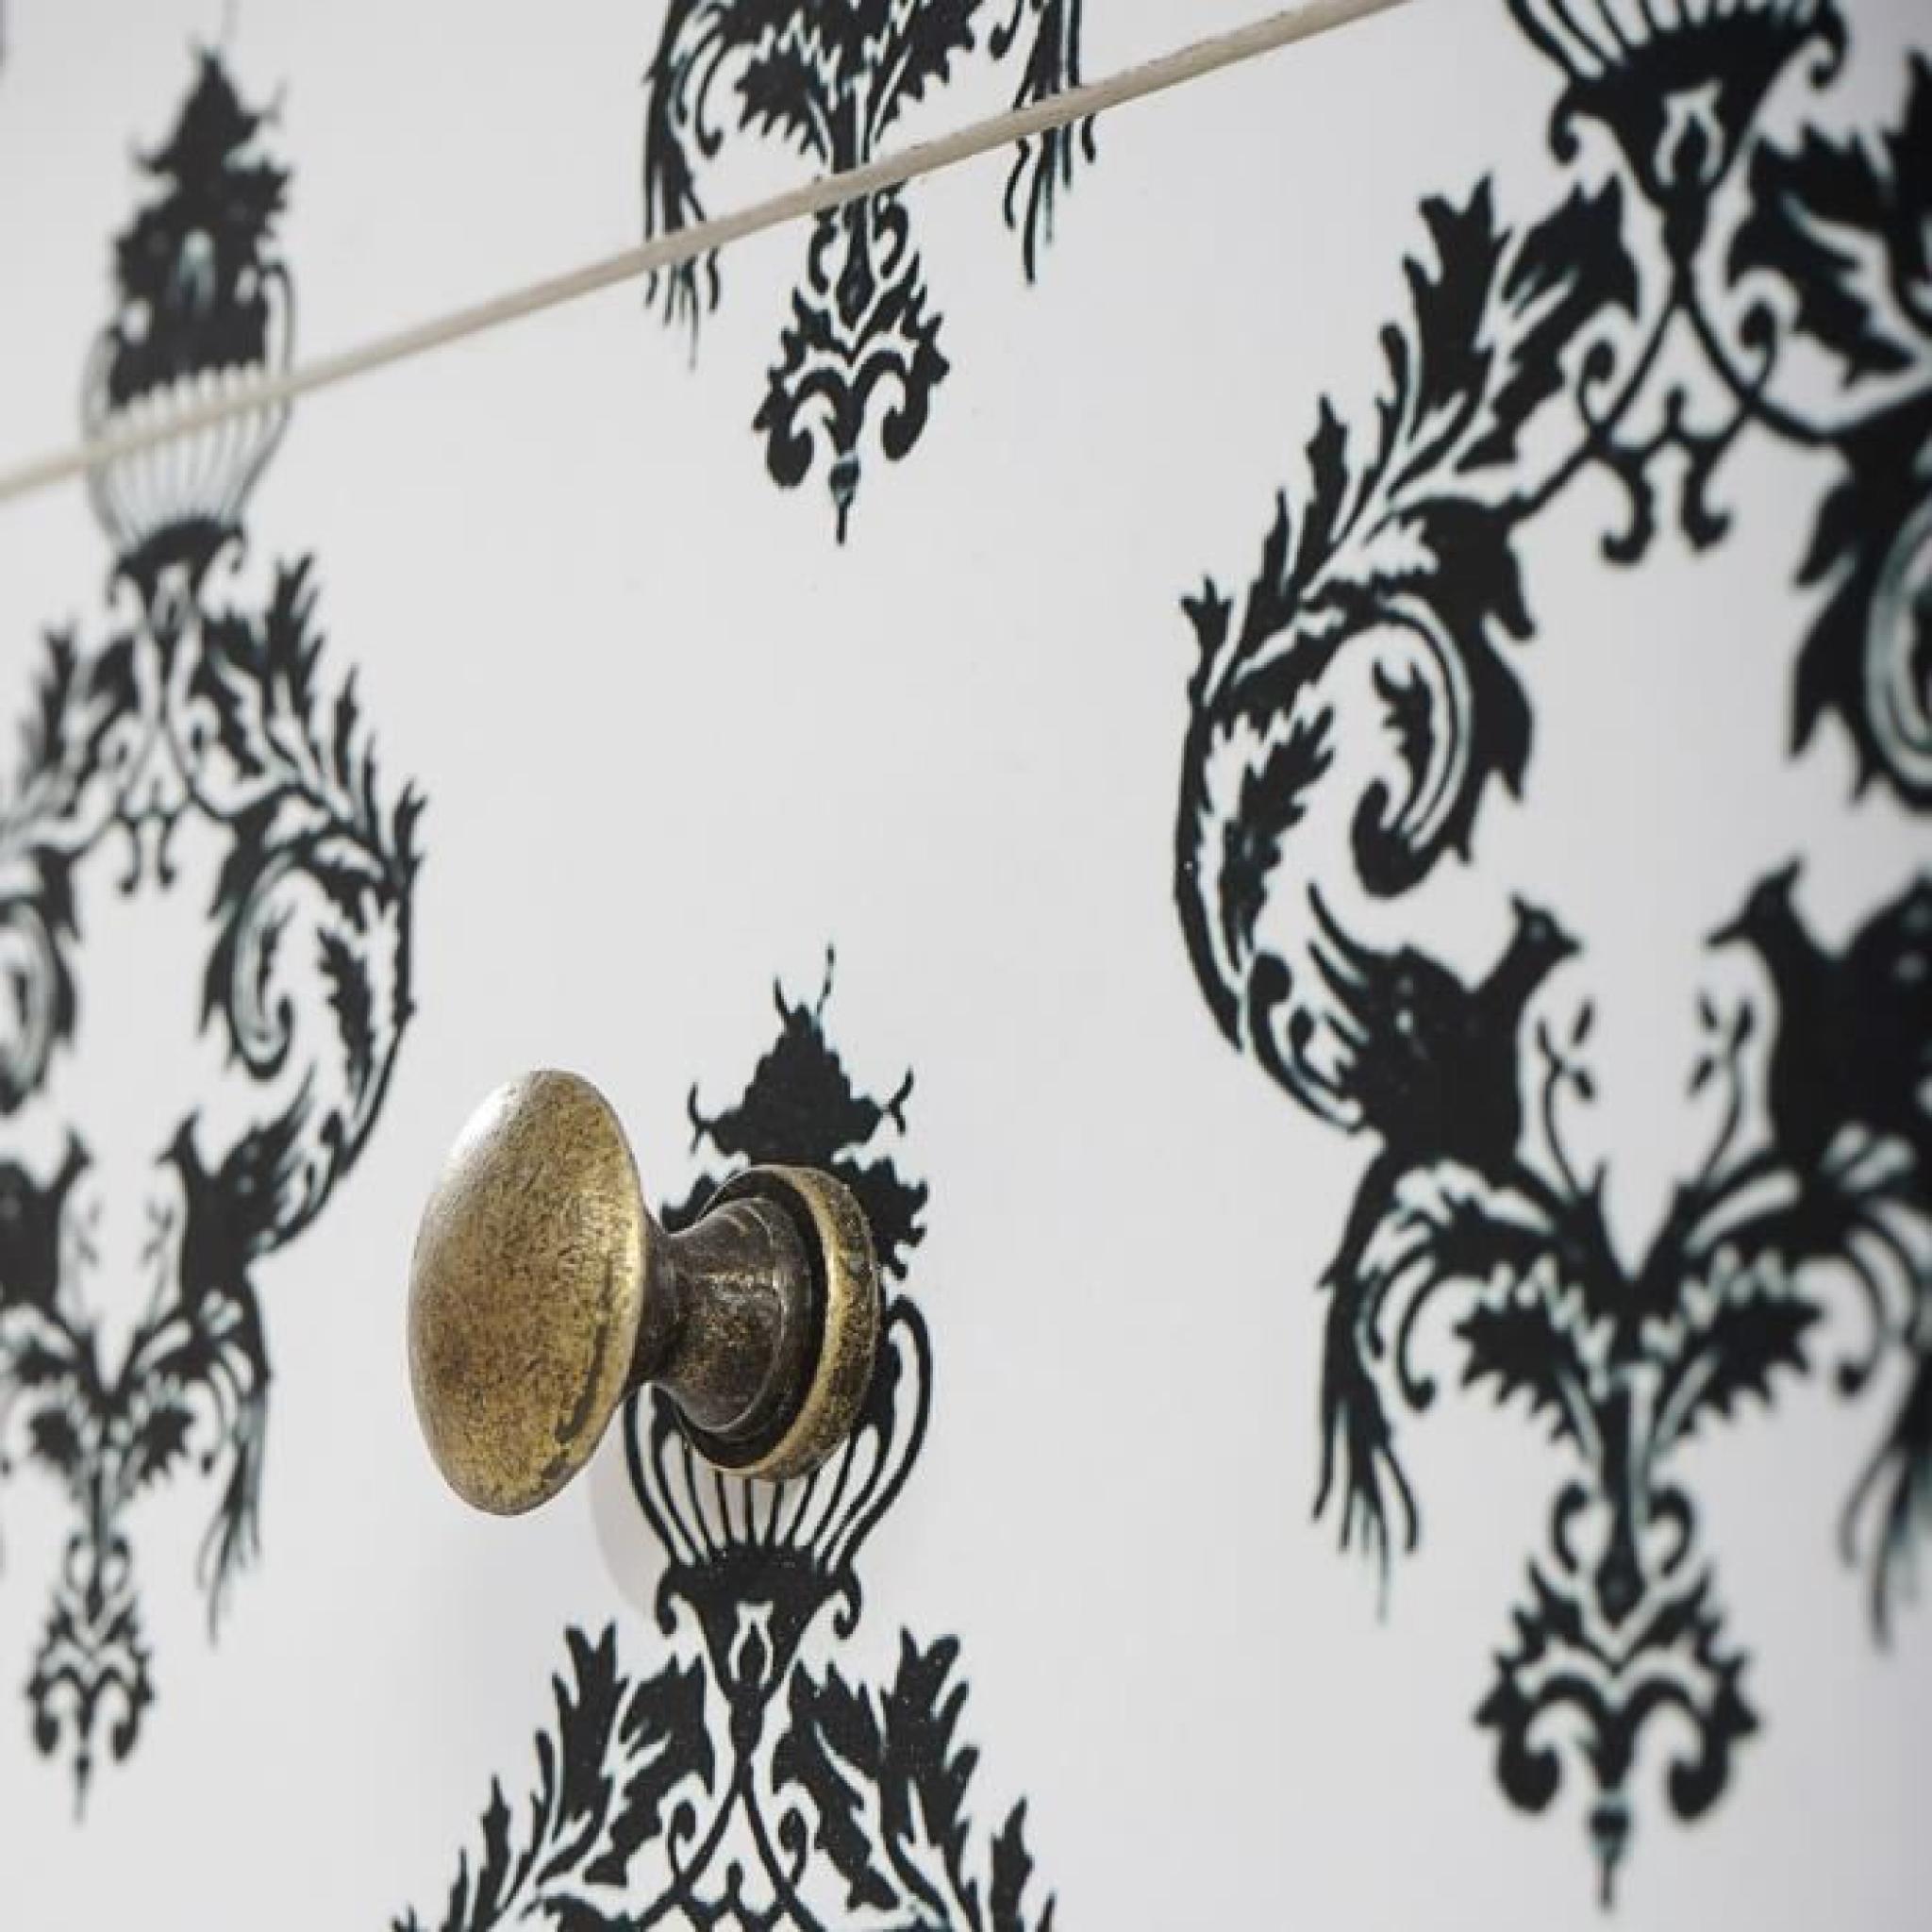 Commode Luton armoire table d'appoint chevet,66x60x33cm, motif baroque. pas cher